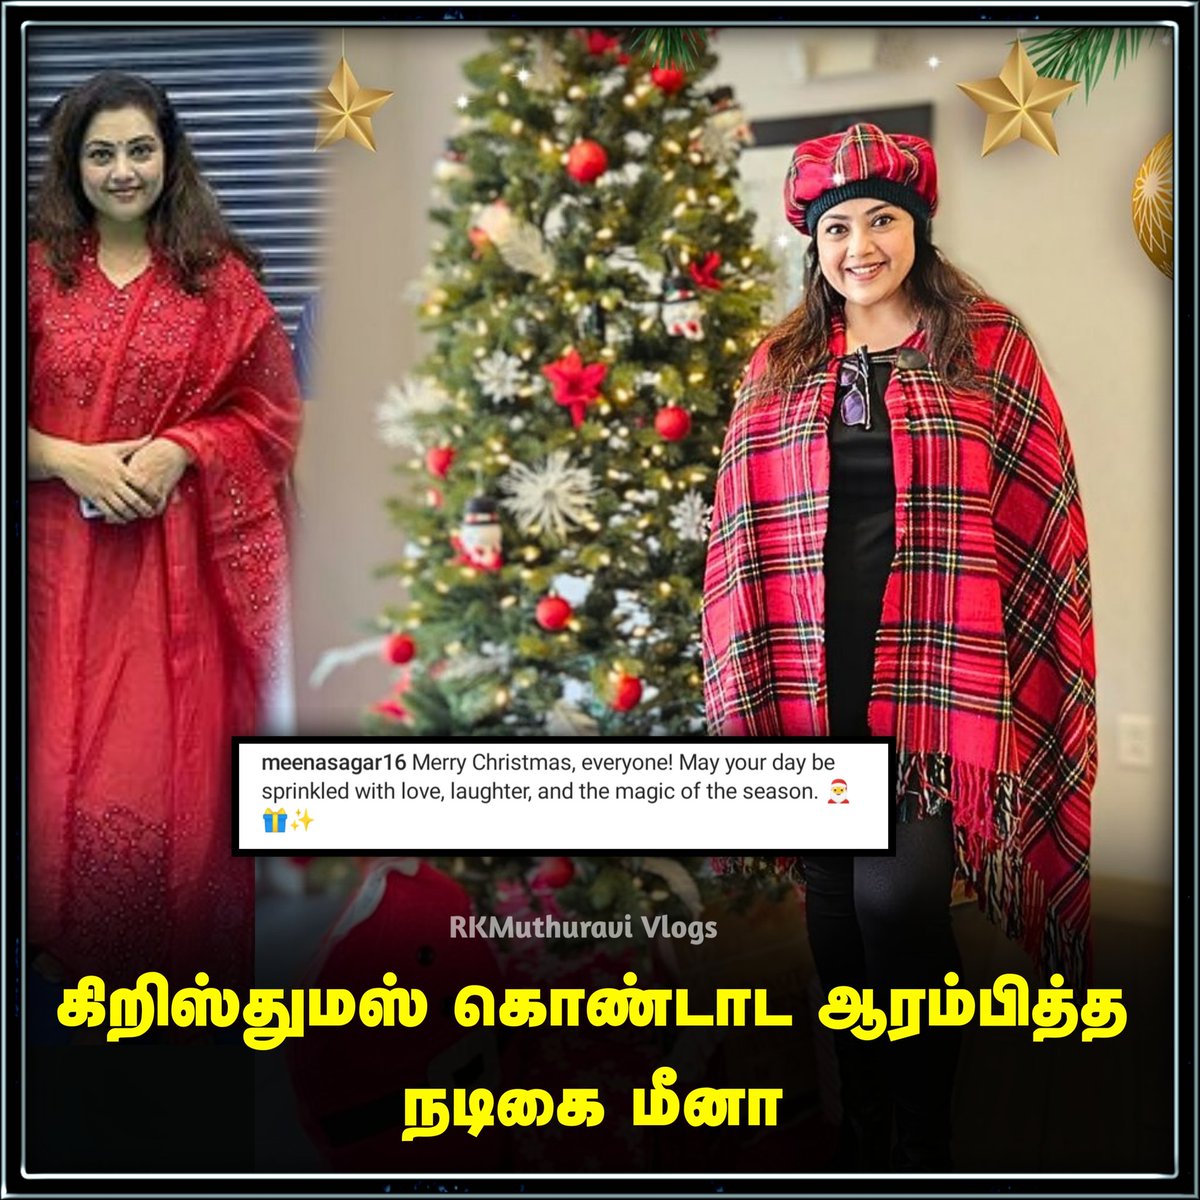 கிறிஸ்துமஸ் கொண்டாட ஆரம்பித்த நடிகை மீனா

#meenasagar #actressmeena #tamilactress #Christmas #trendingnow #LatestNews